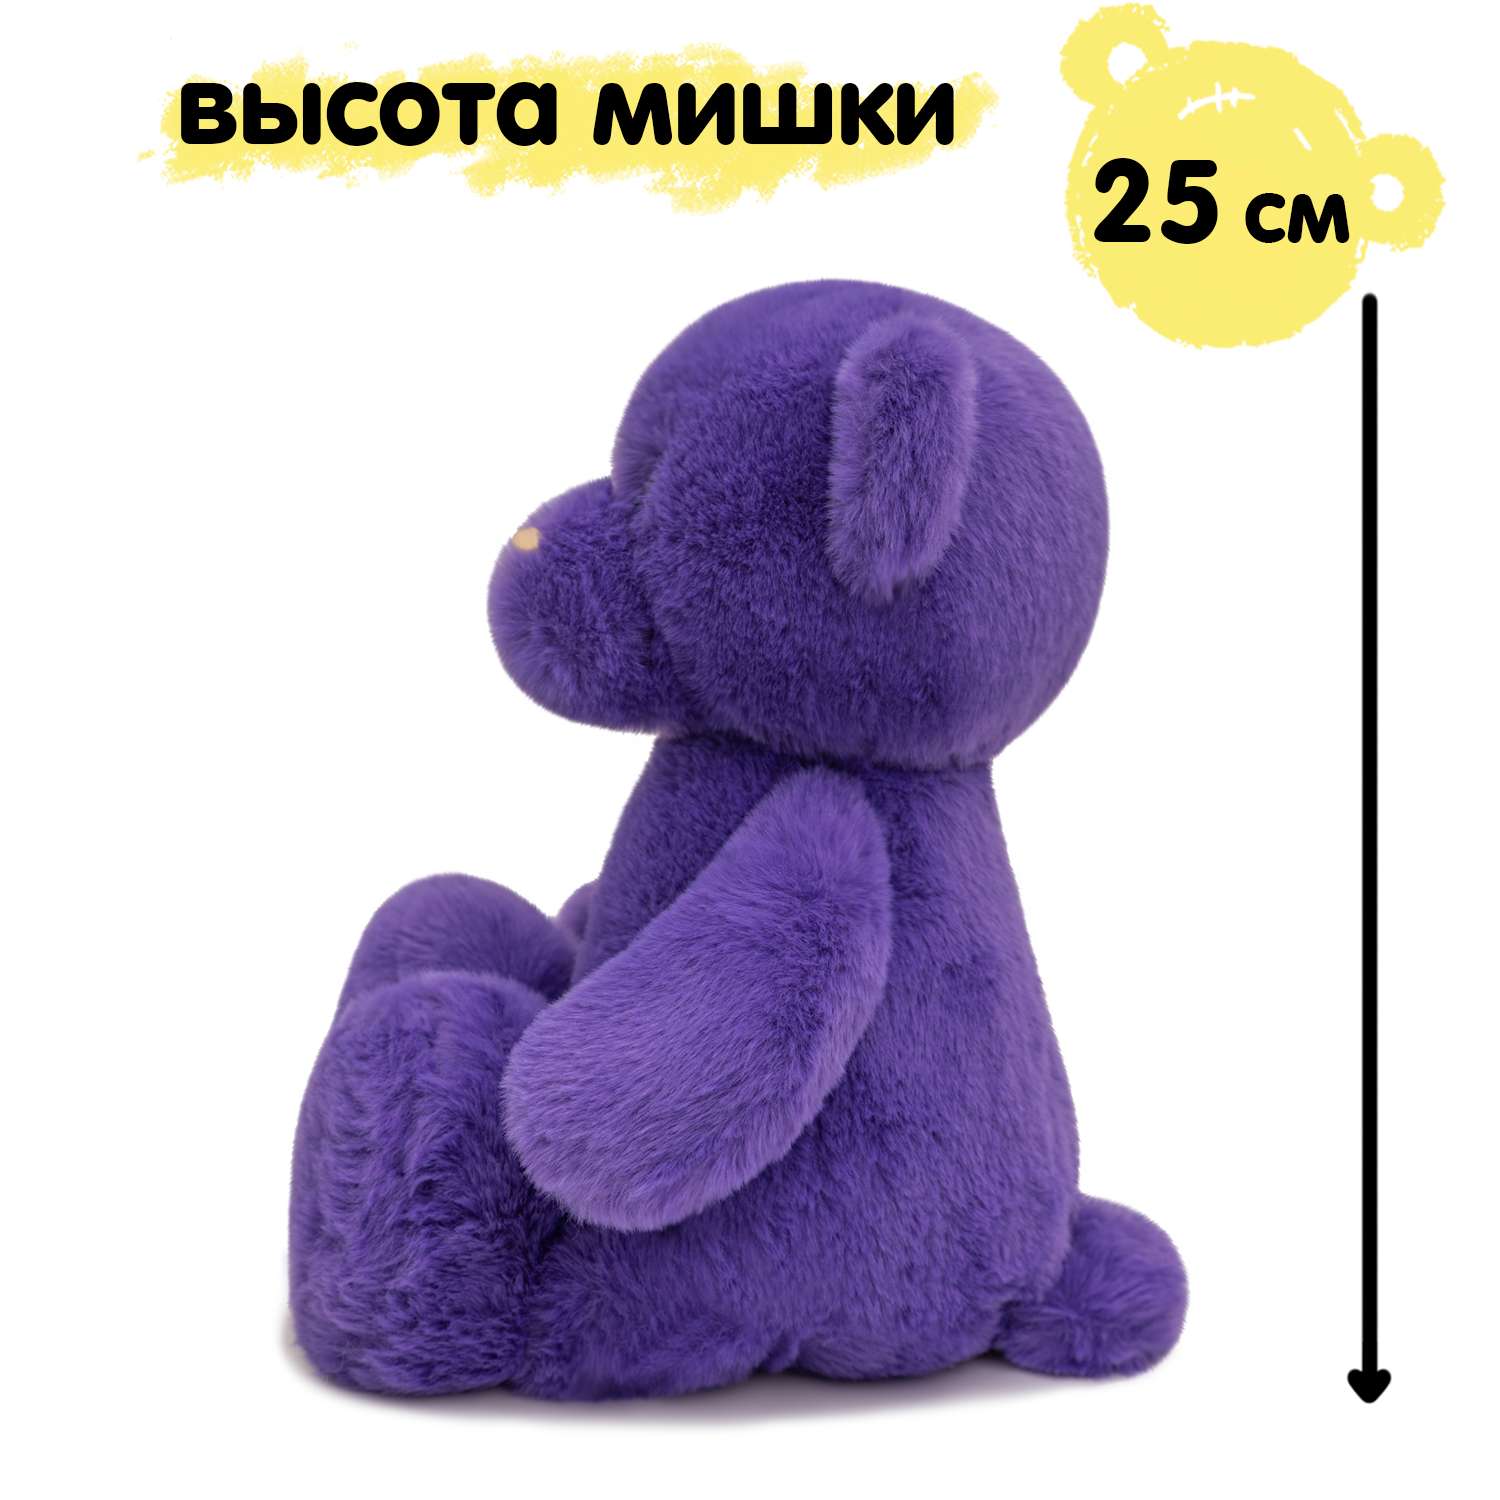 Мягкая игрушка KULT of toys Плюшевый медведь 35 см цвет фиолетовый - фото 6